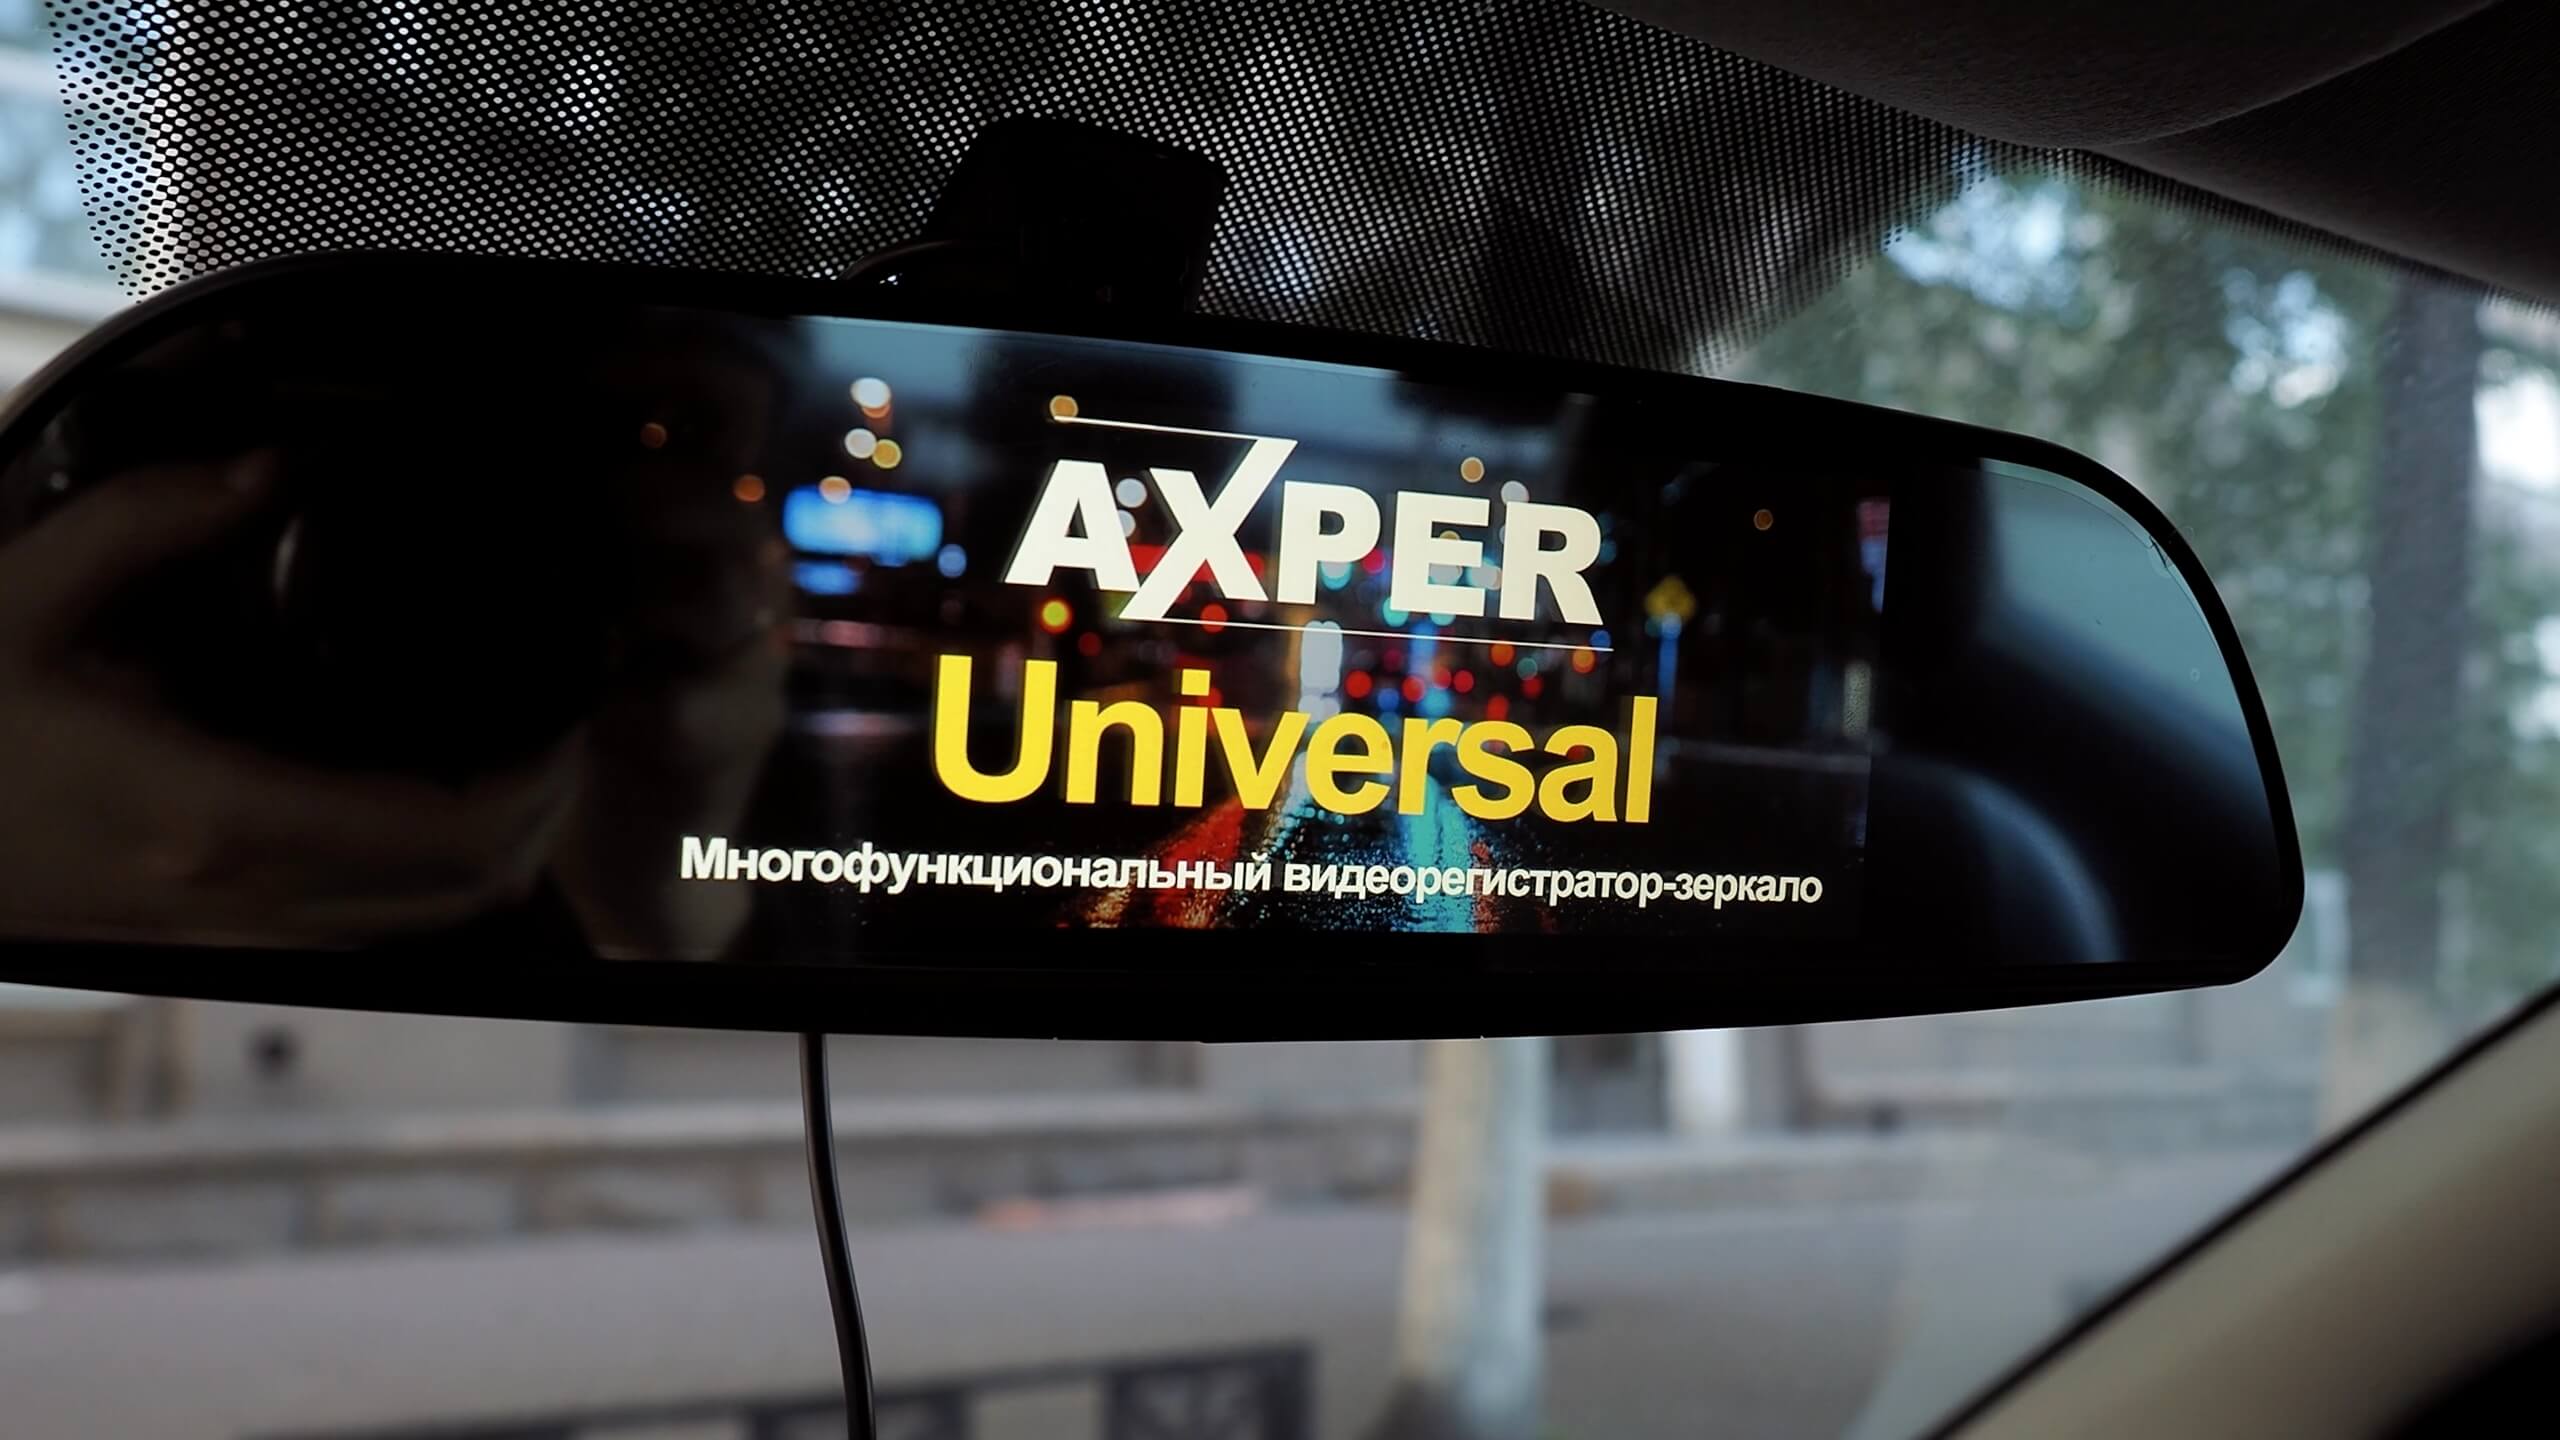 Axper Universal